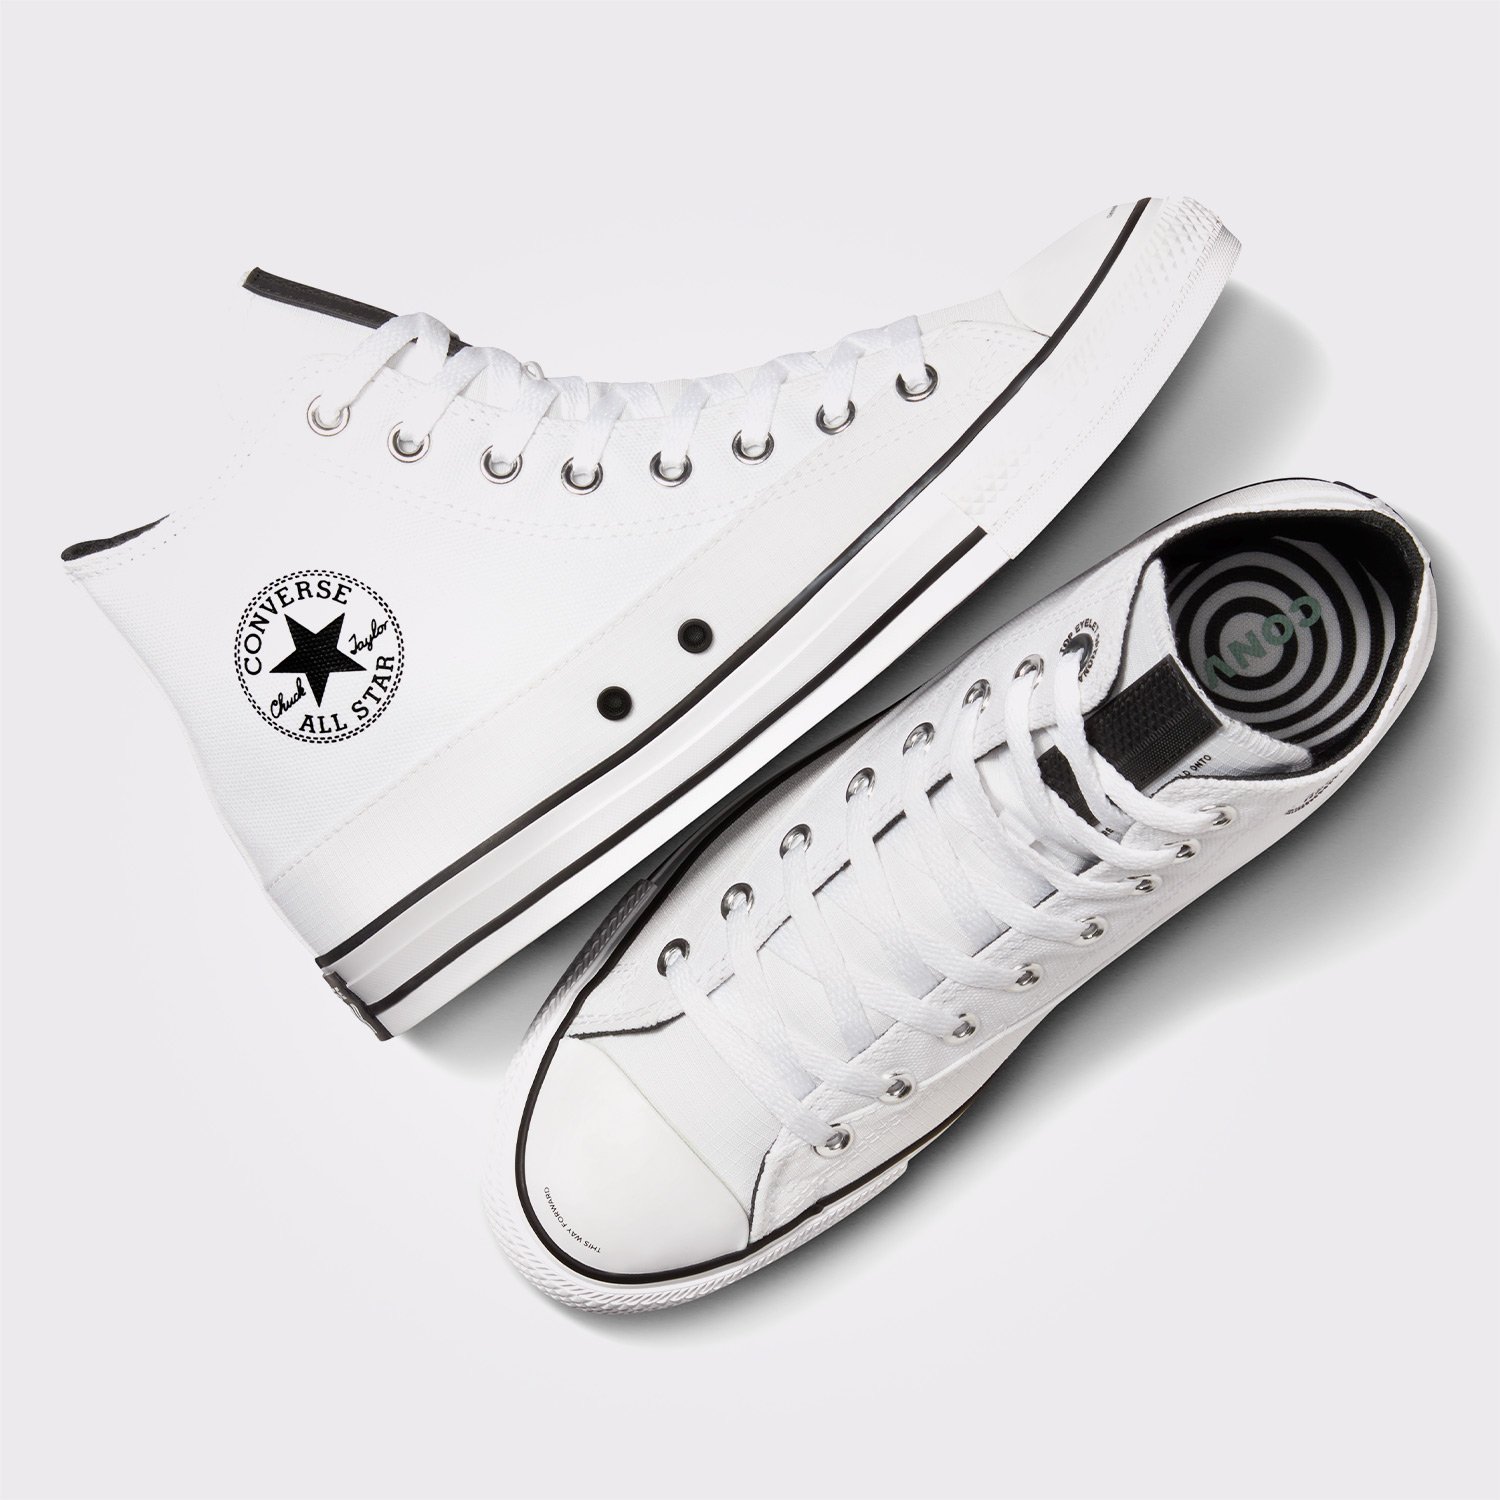 Converse Chuck Taylor All Star Unisex Beyaz Sneaker